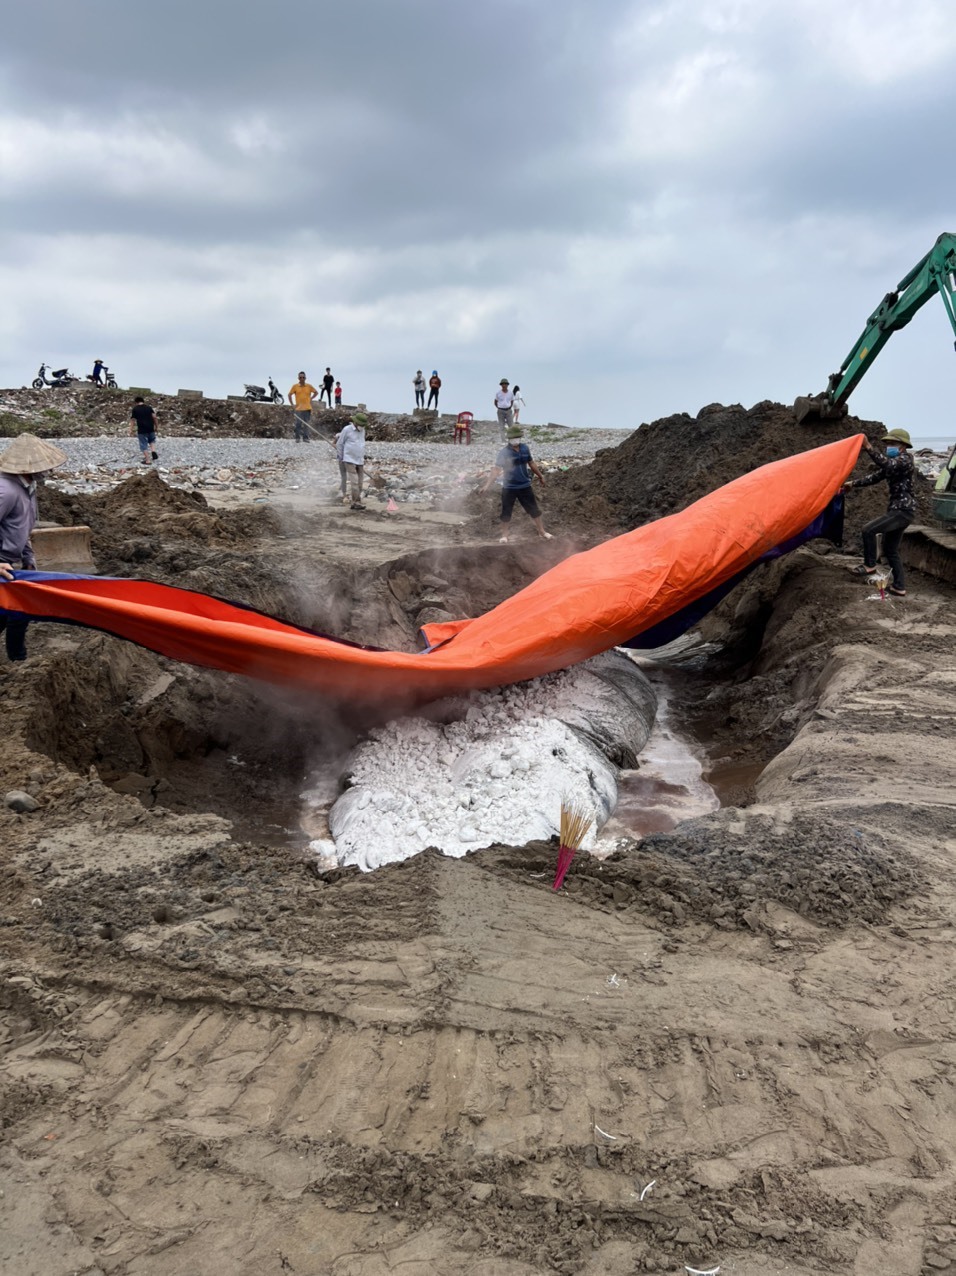 Tiến hành chôn lấp xác cá voi theo nghi thức của người dân địa phương. Ảnh: Trần Phương